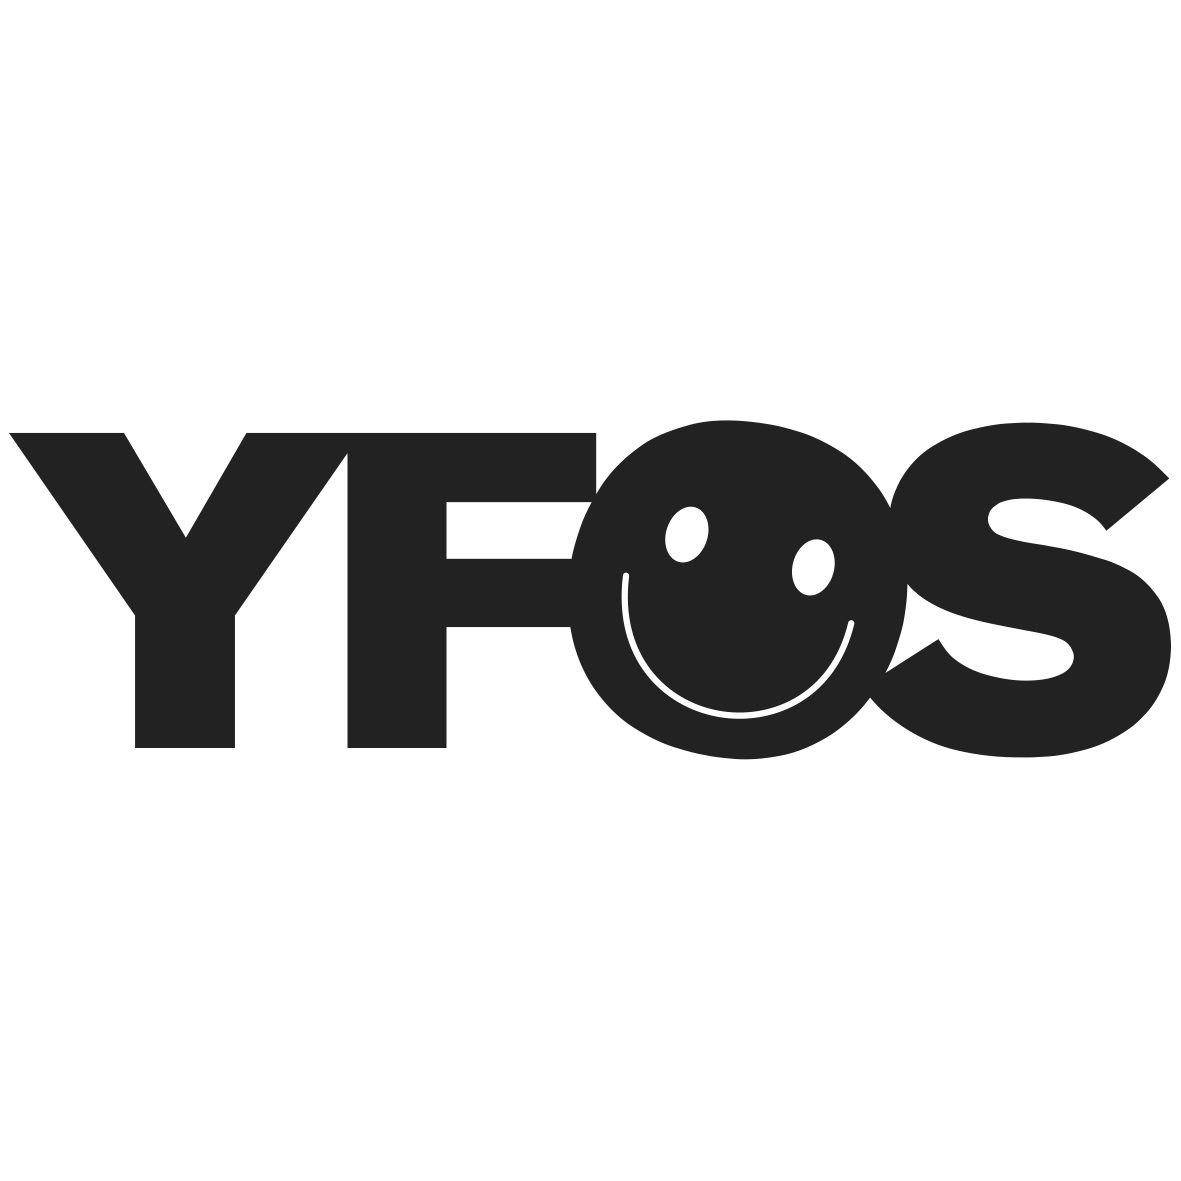 Das Logo von Young Faces of Stuttgart besteht aus den Anfangsbuchstaben Y F O und S. Das O ist ein lachender Smiley